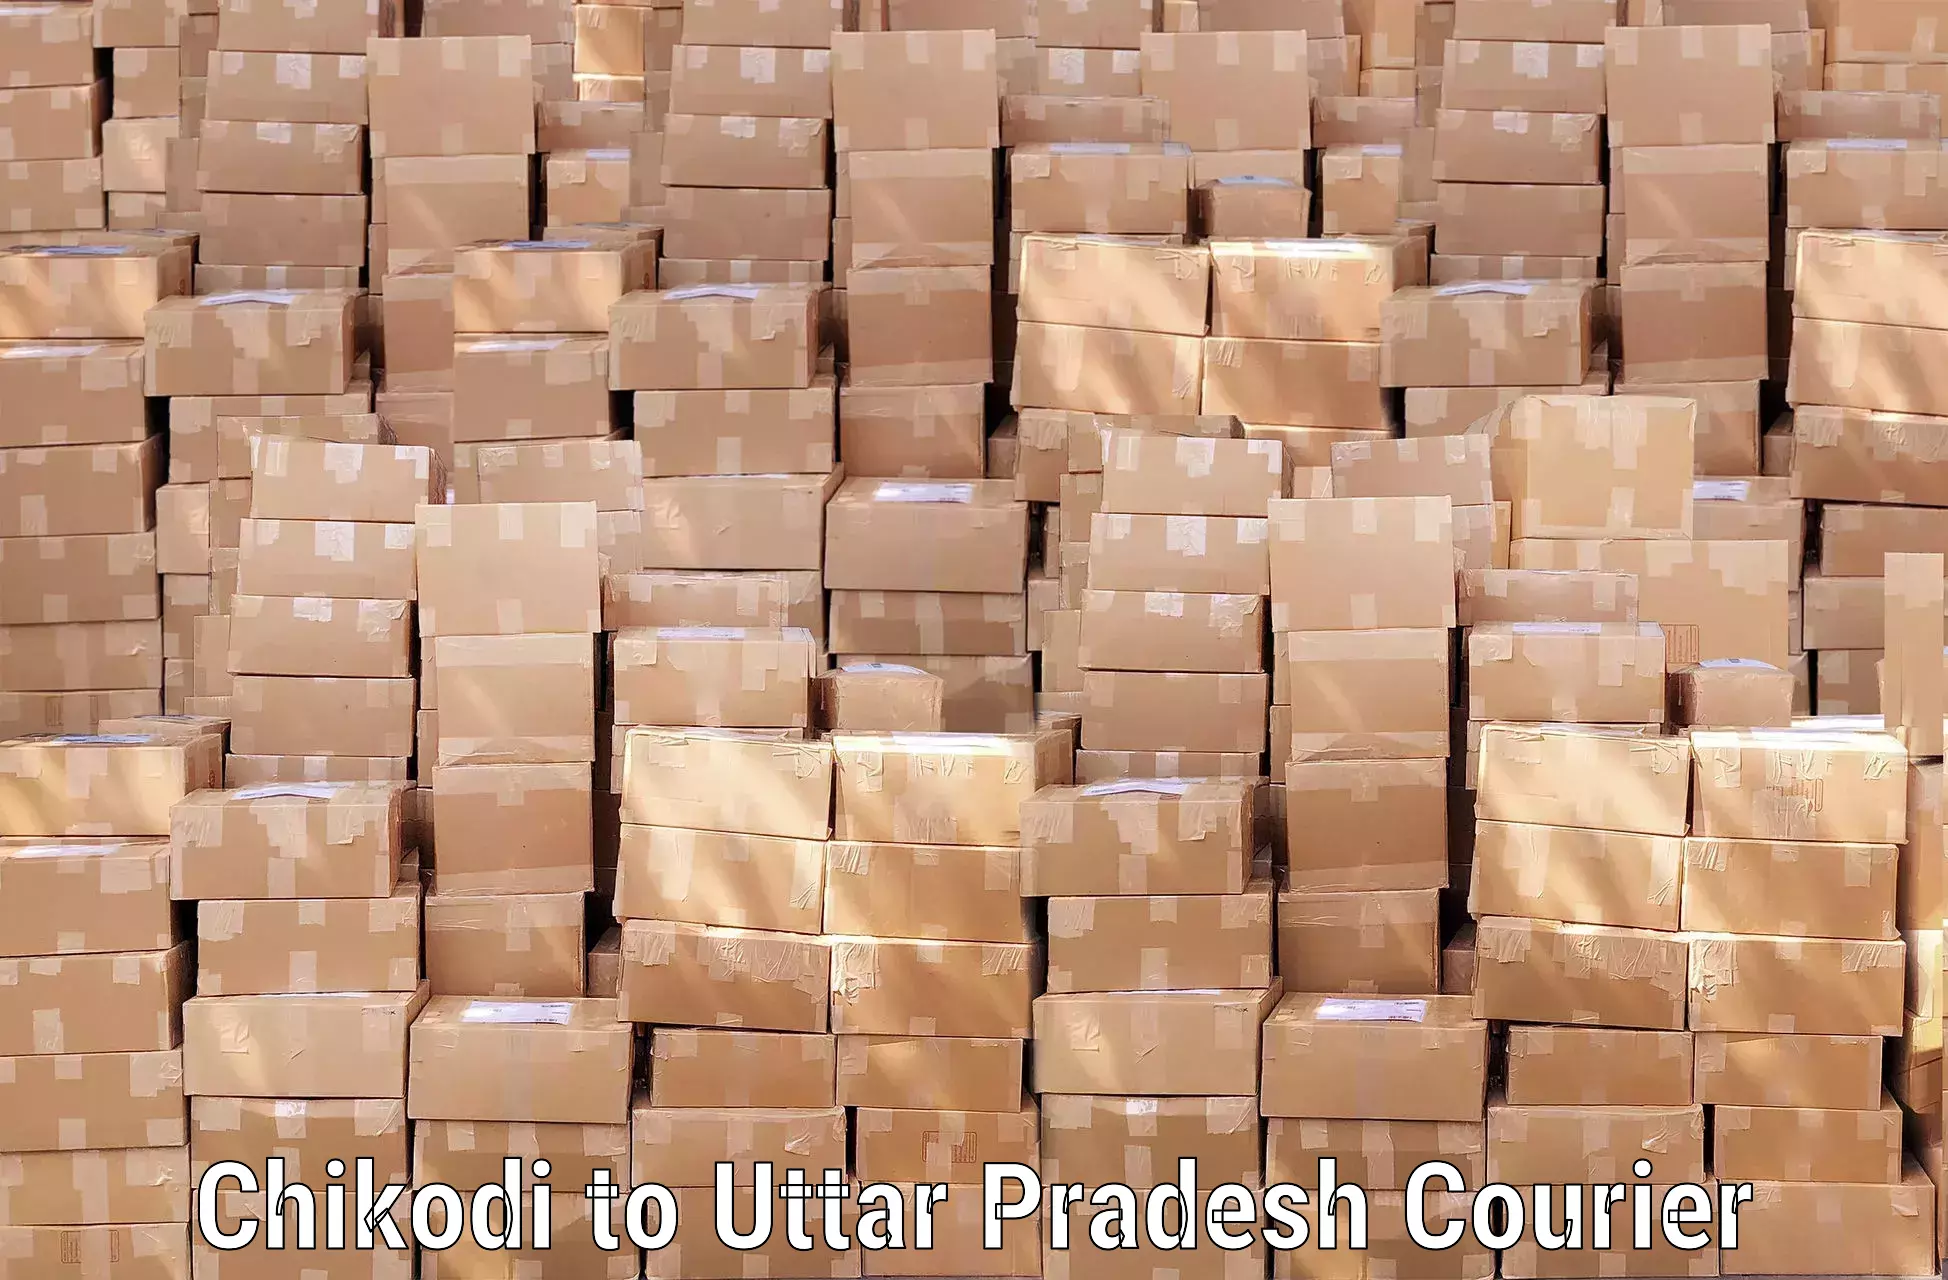 Door-to-door baggage service Chikodi to Uttar Pradesh